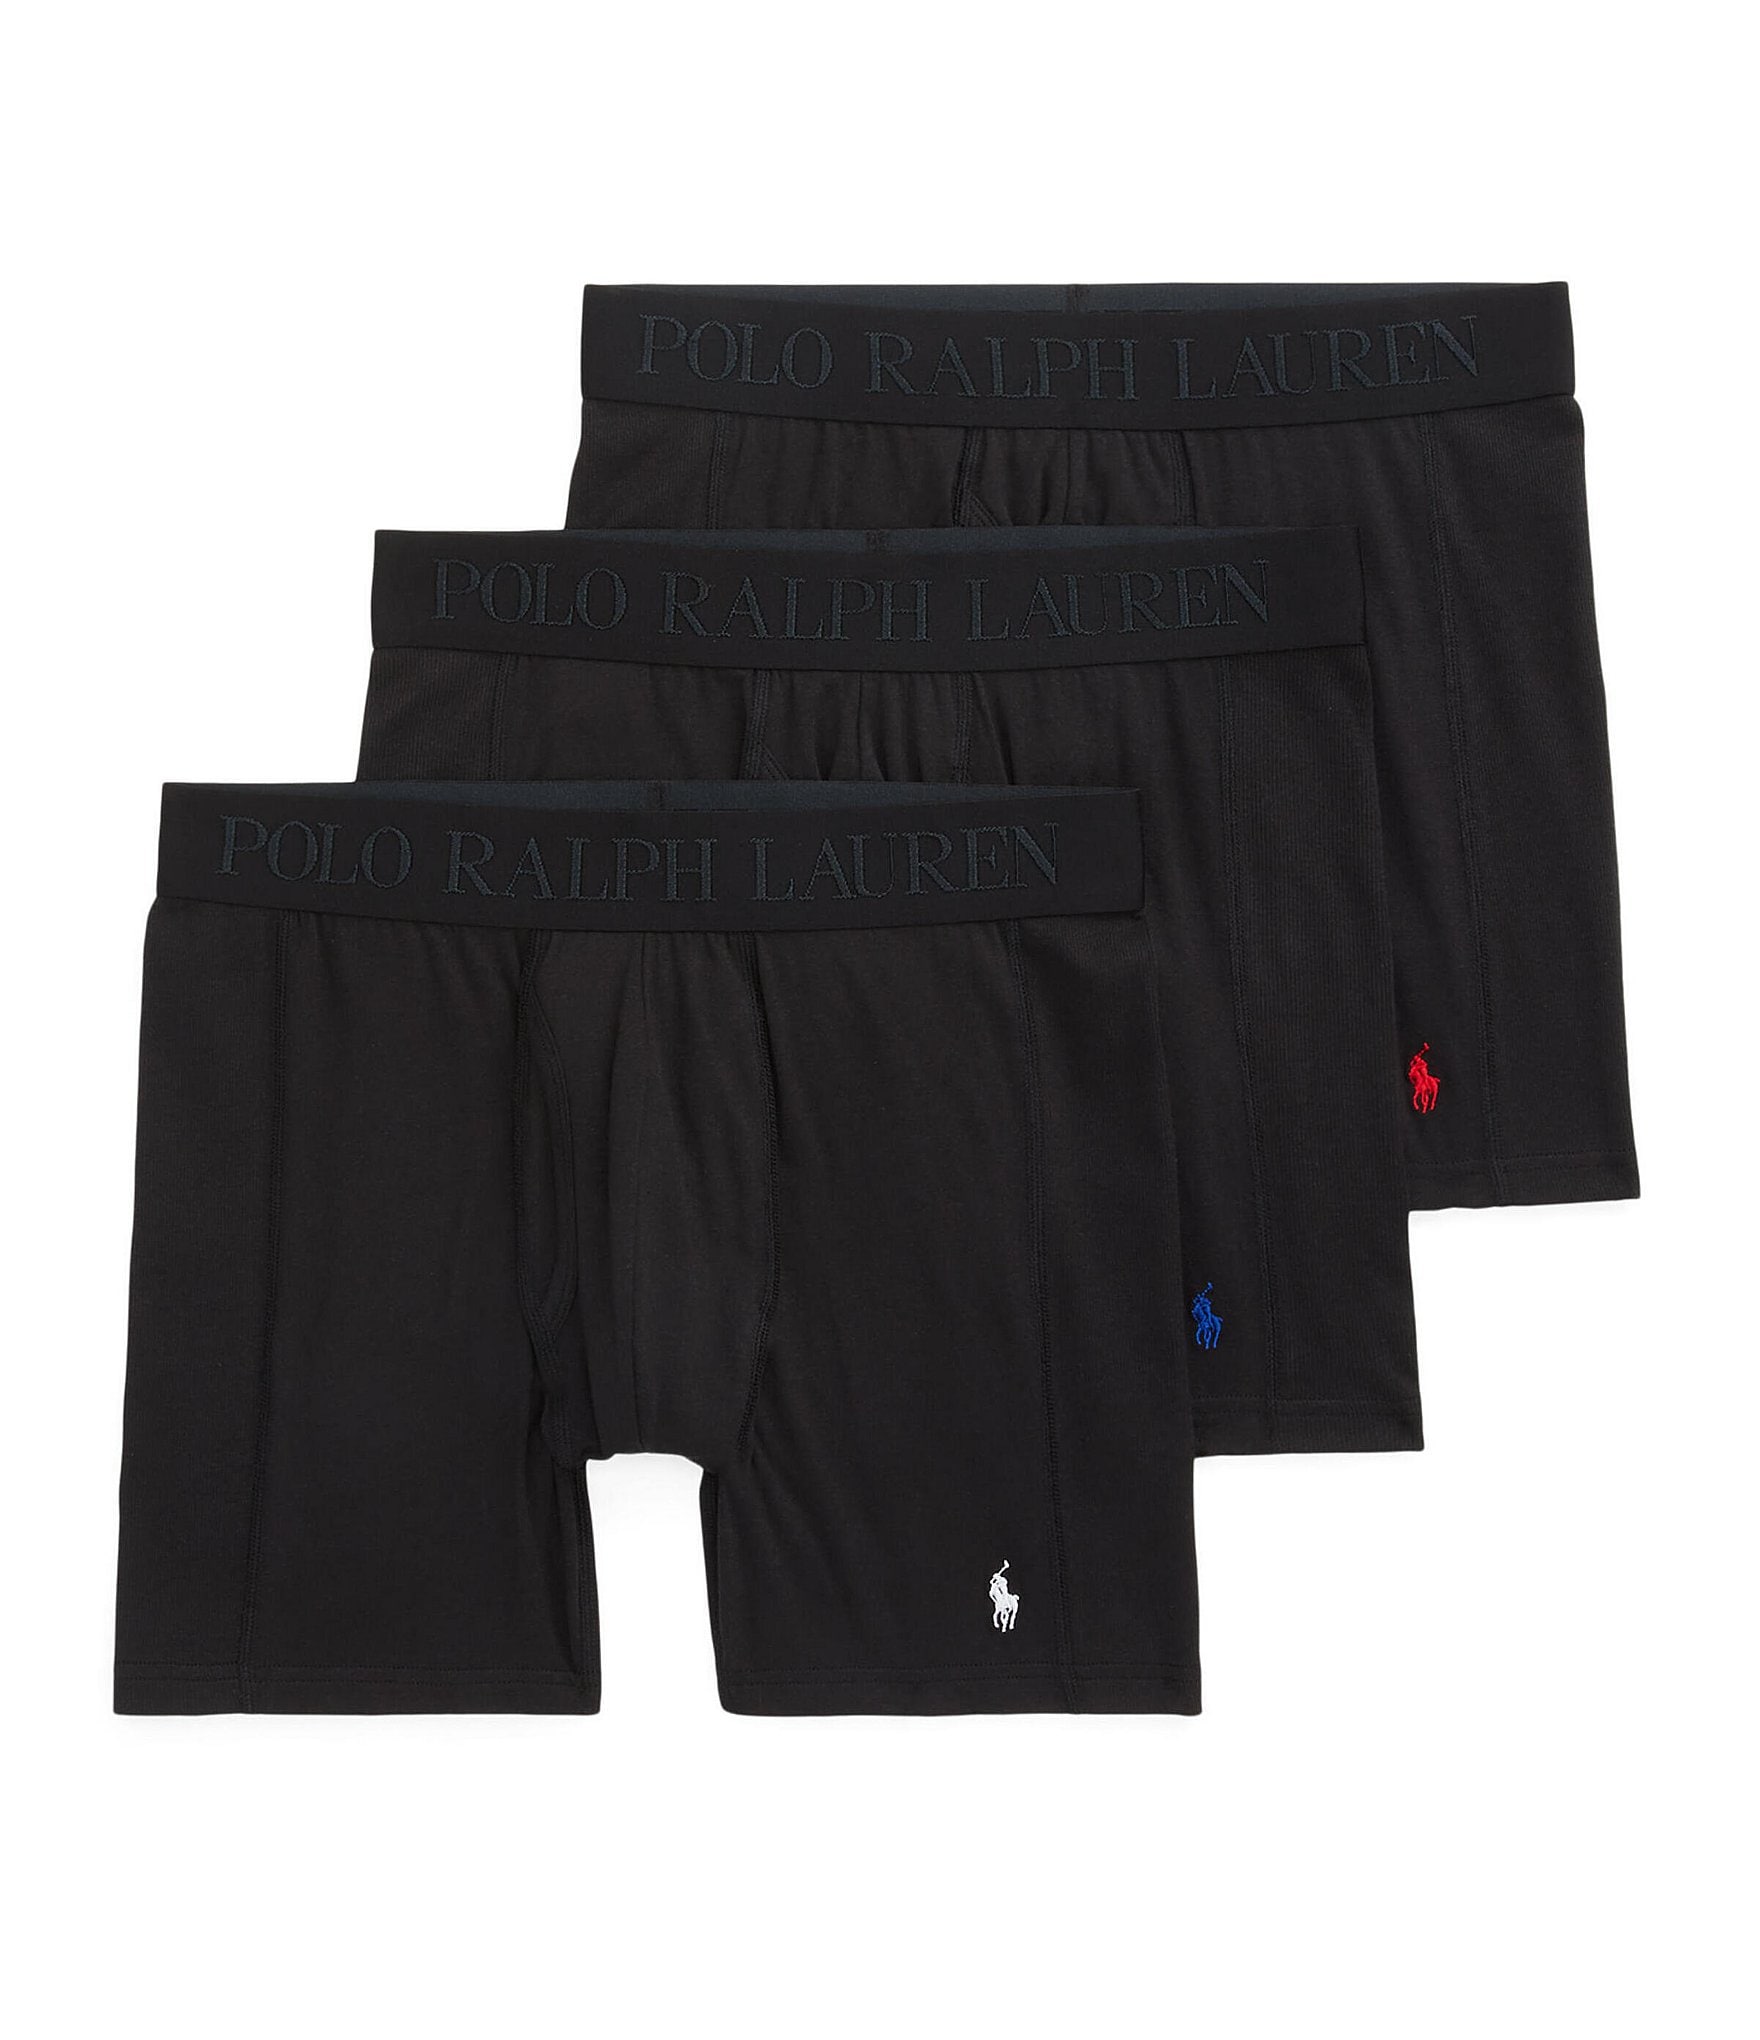 cotton rib boxer shorts xl｜TikTok Search